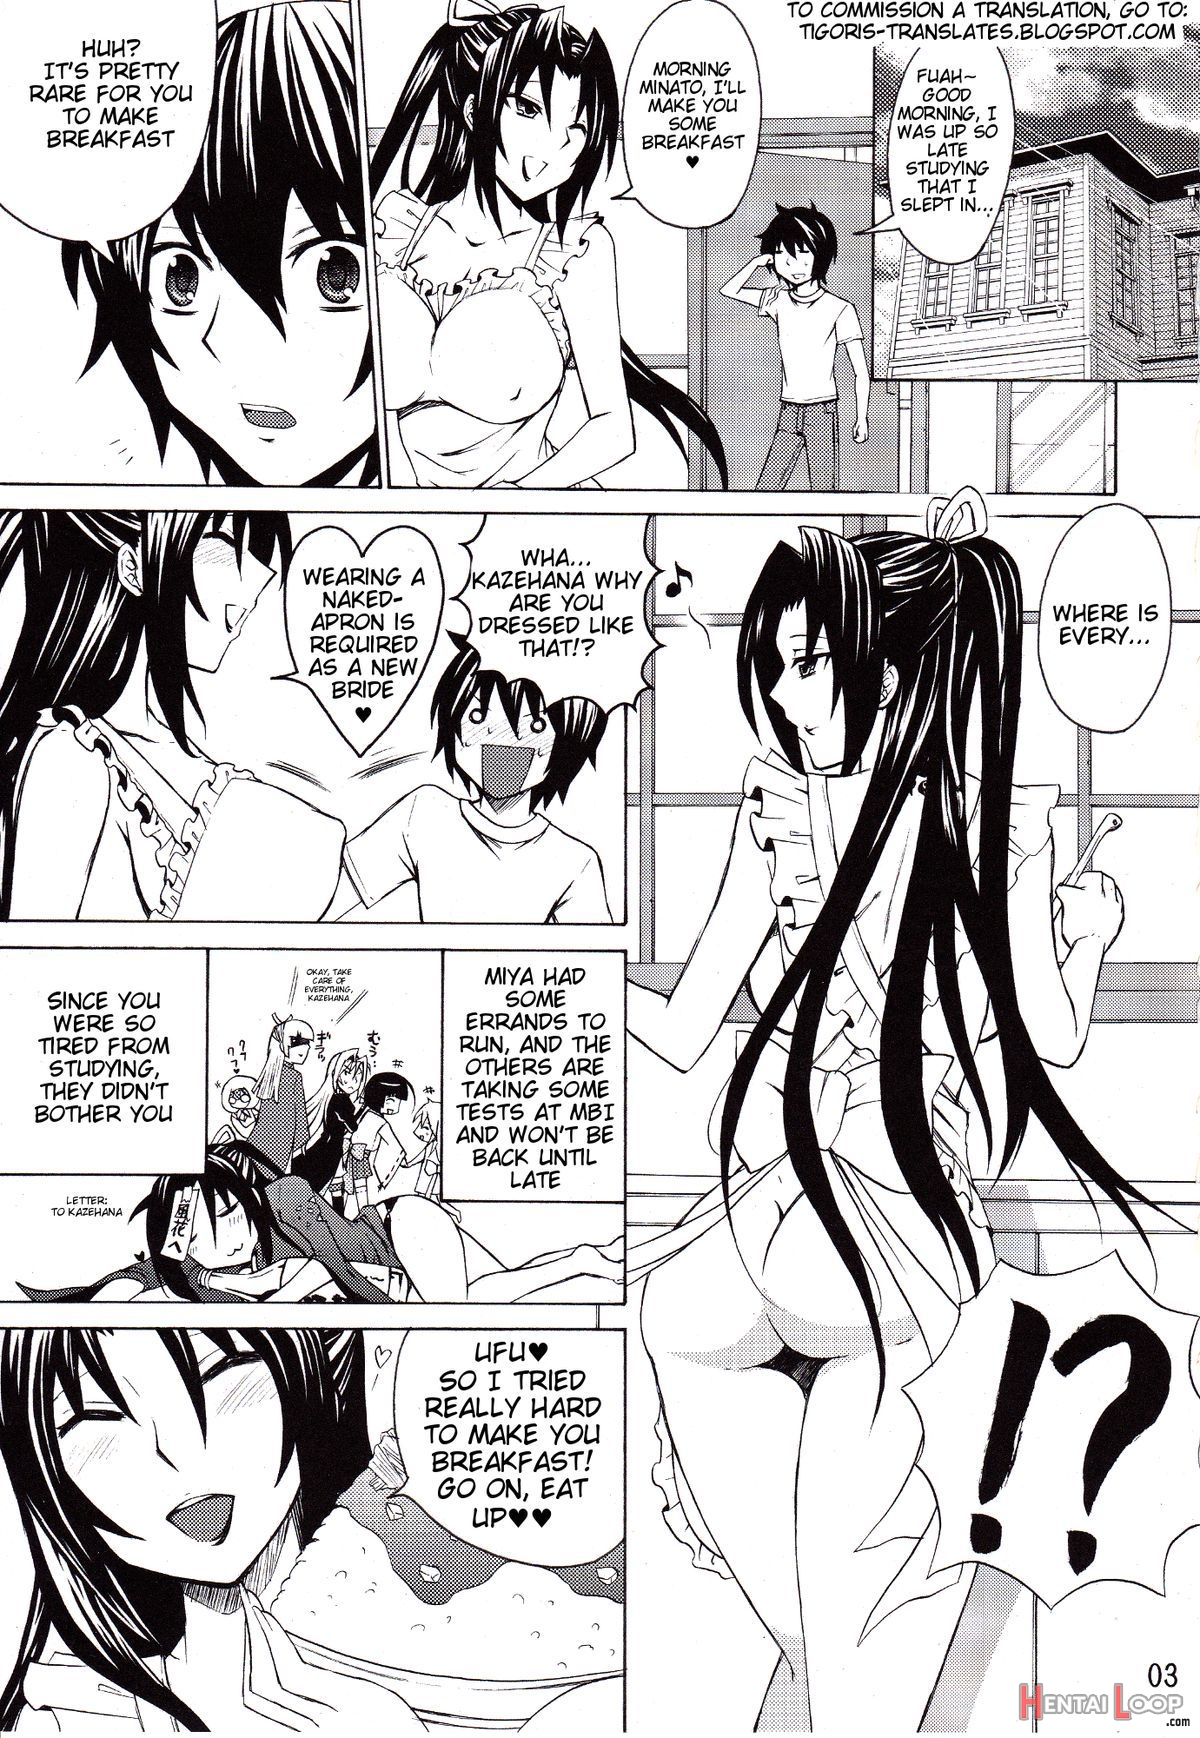 Kazehana-san Is My Wife page 2